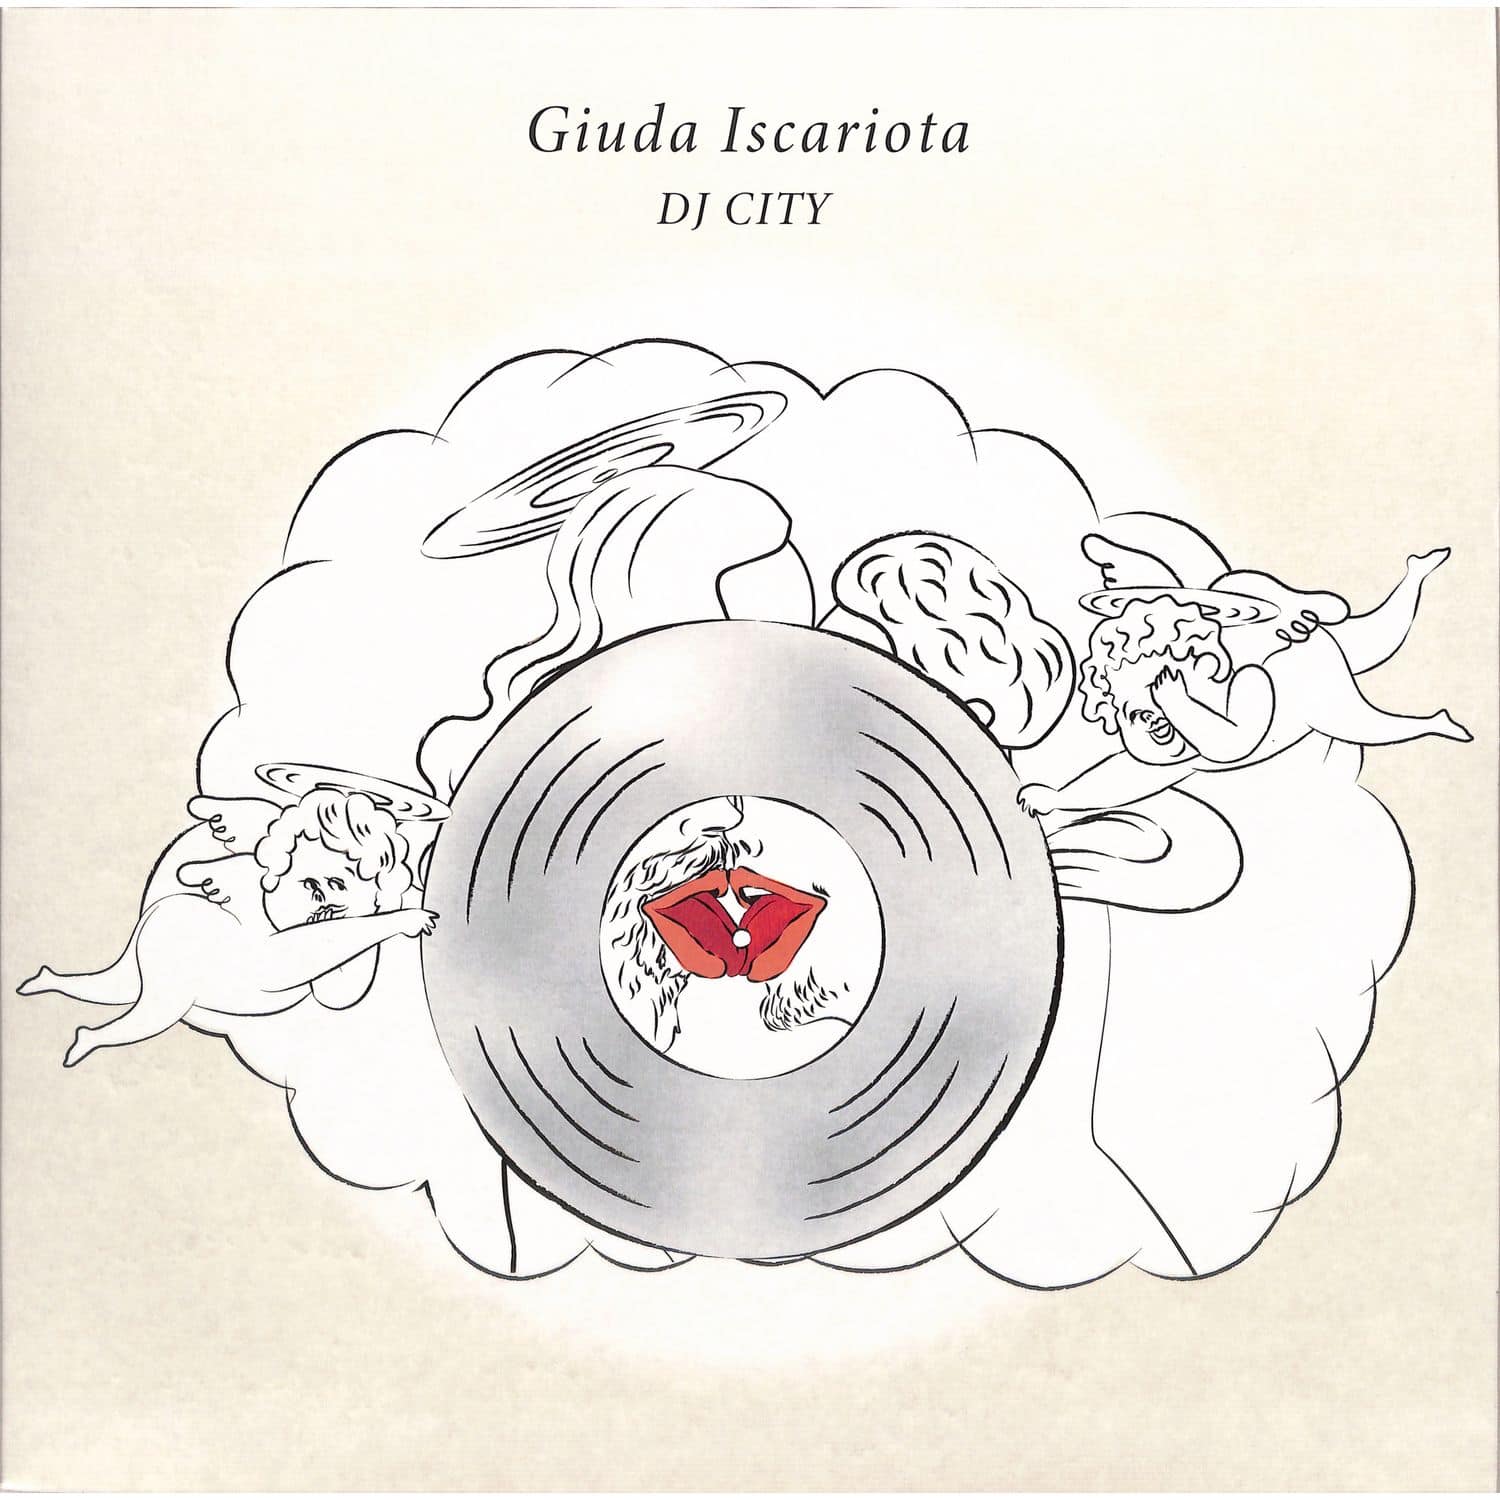 DJ City - GIUDA ISCARIOTA